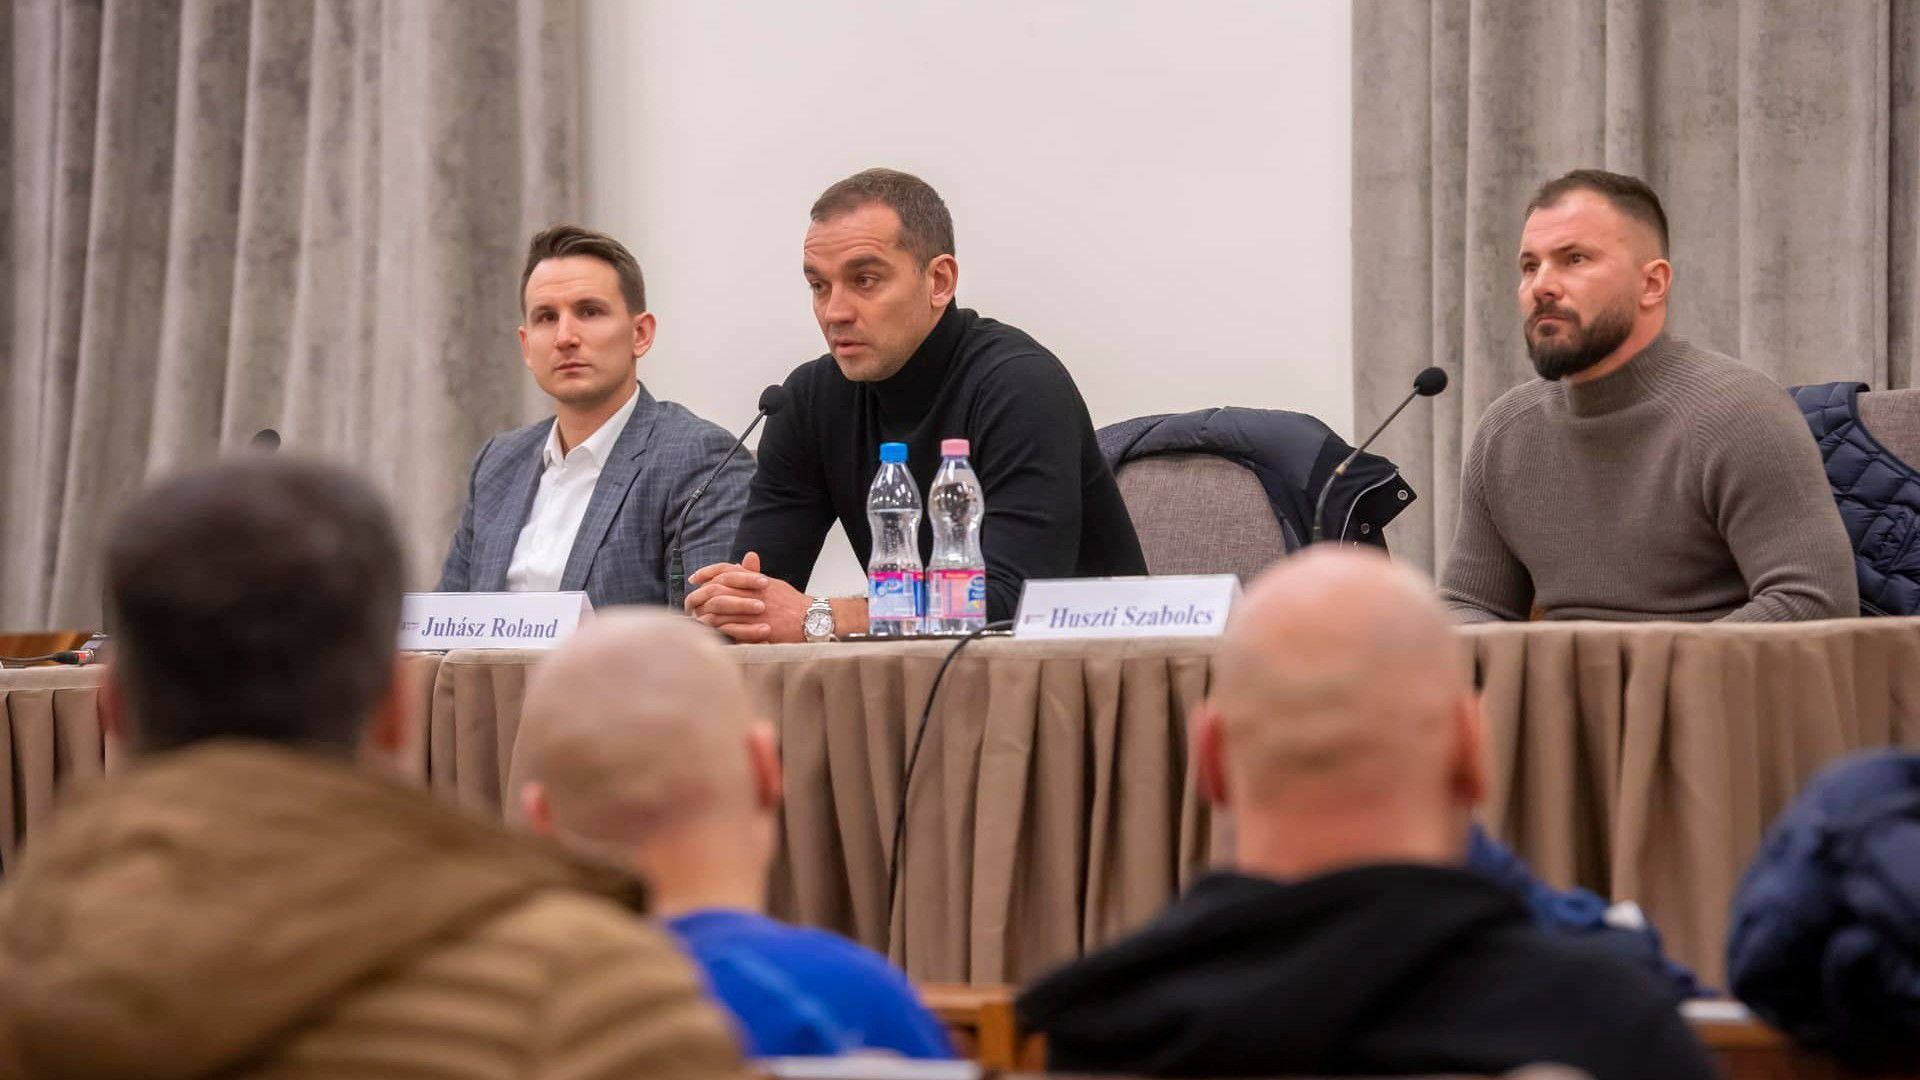 Az eseményen szóba került Budu Zivzivadze, Claudiu Bumba, Artem Sabanov és Jevhen Makarenko jövője is. (Fotó: molfehervarfc.hu)